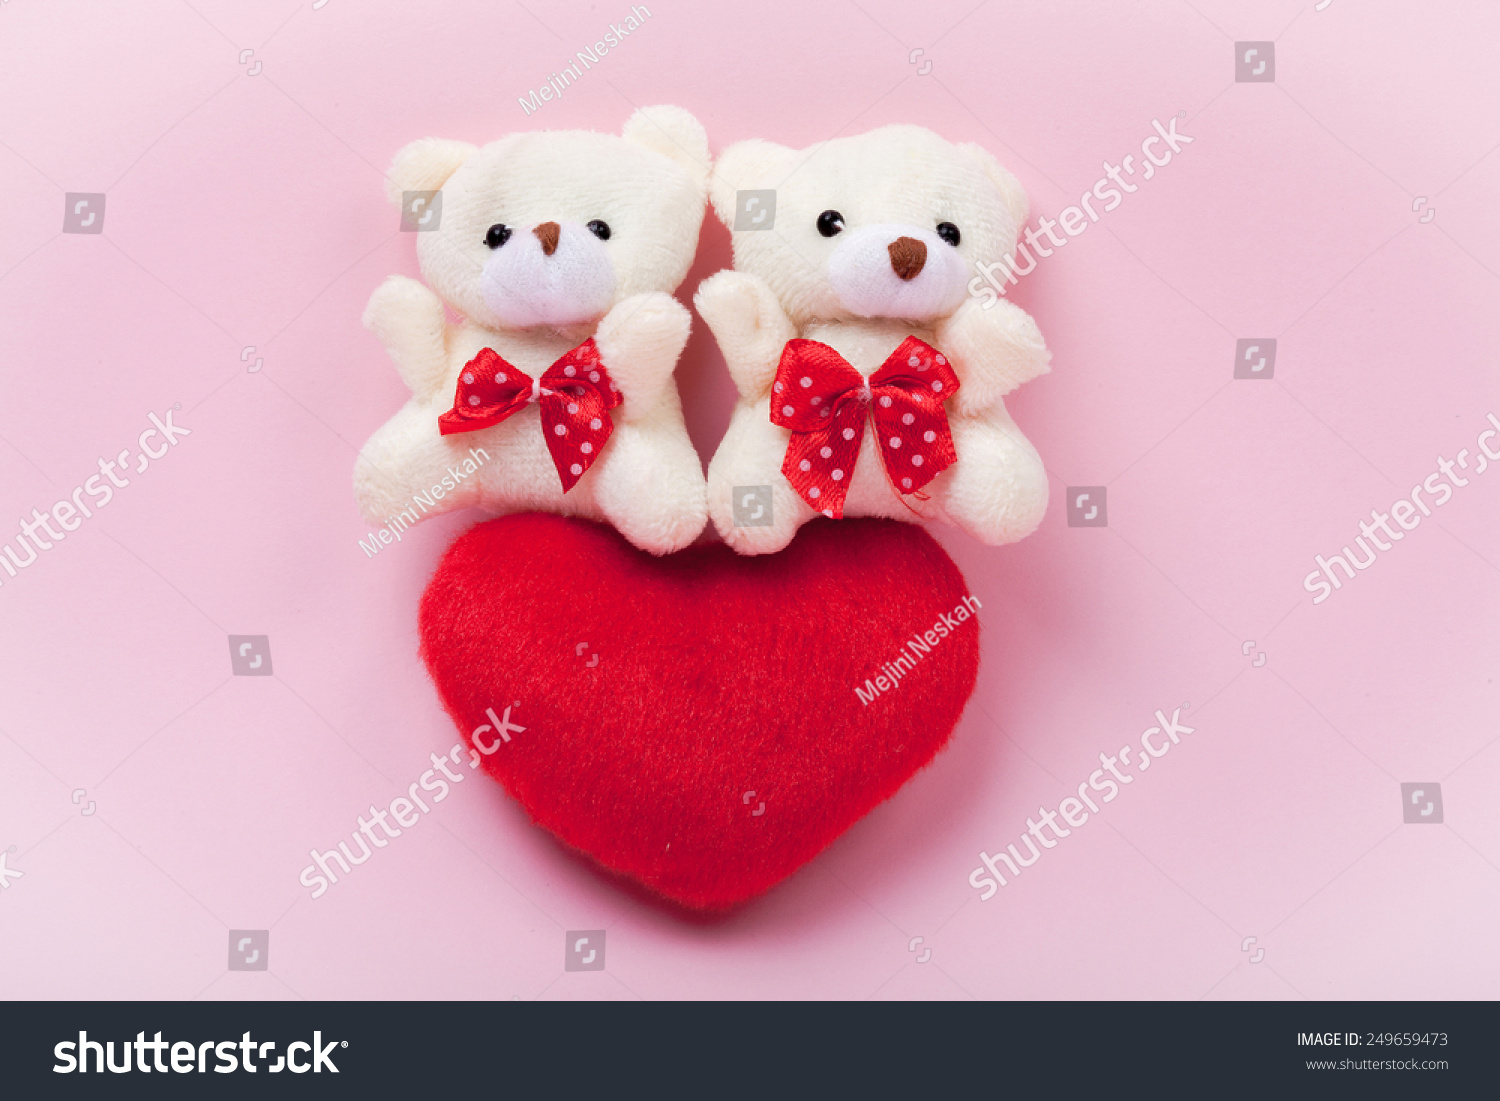 small love teddy bear